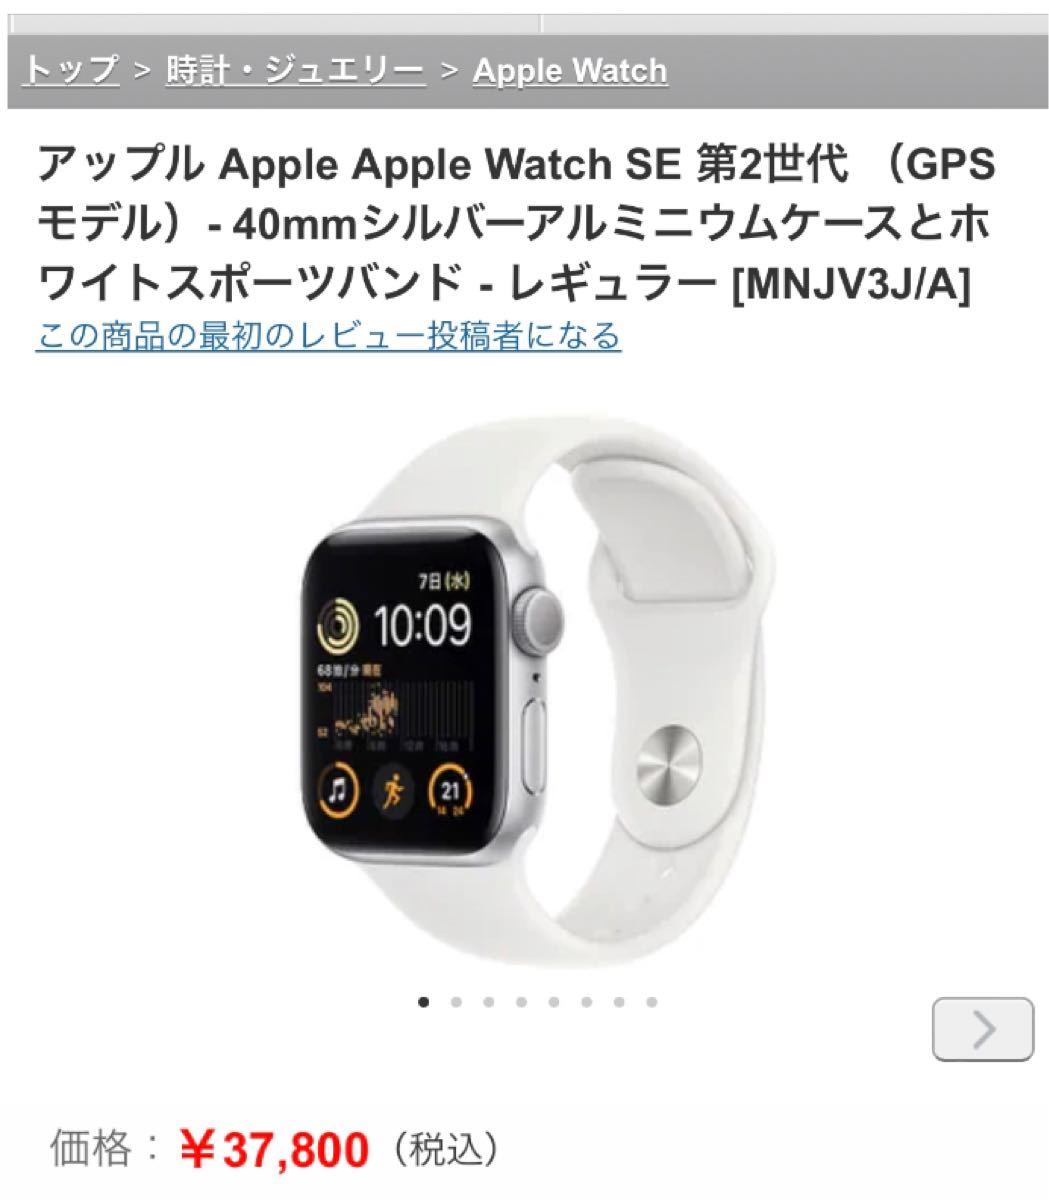 新品・未使用のApple Watch SE 第2世代です。